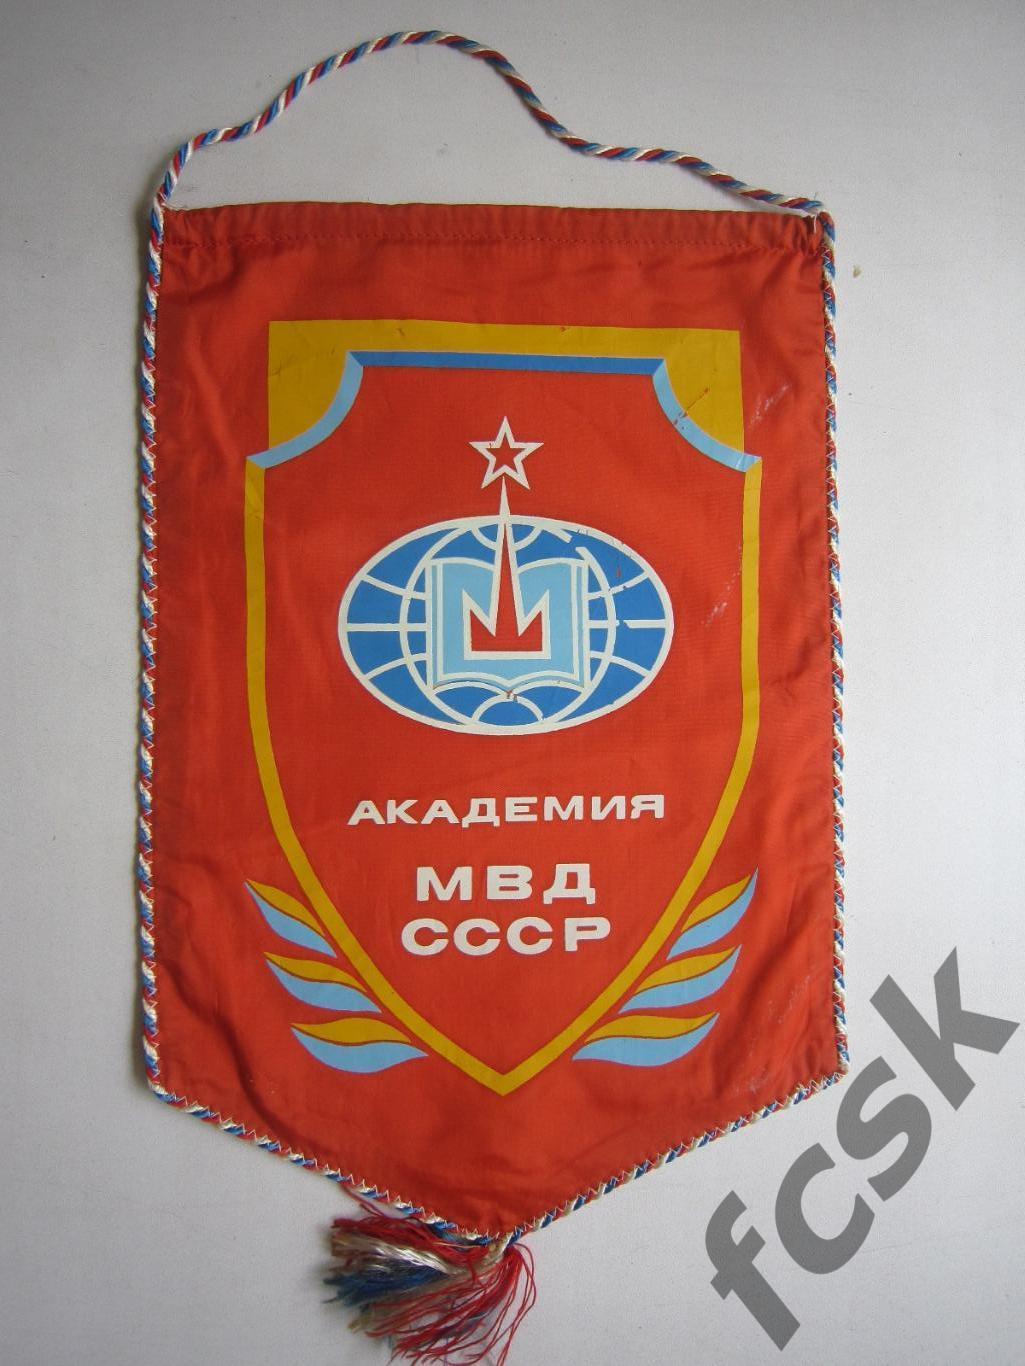 Академия МВД СССР